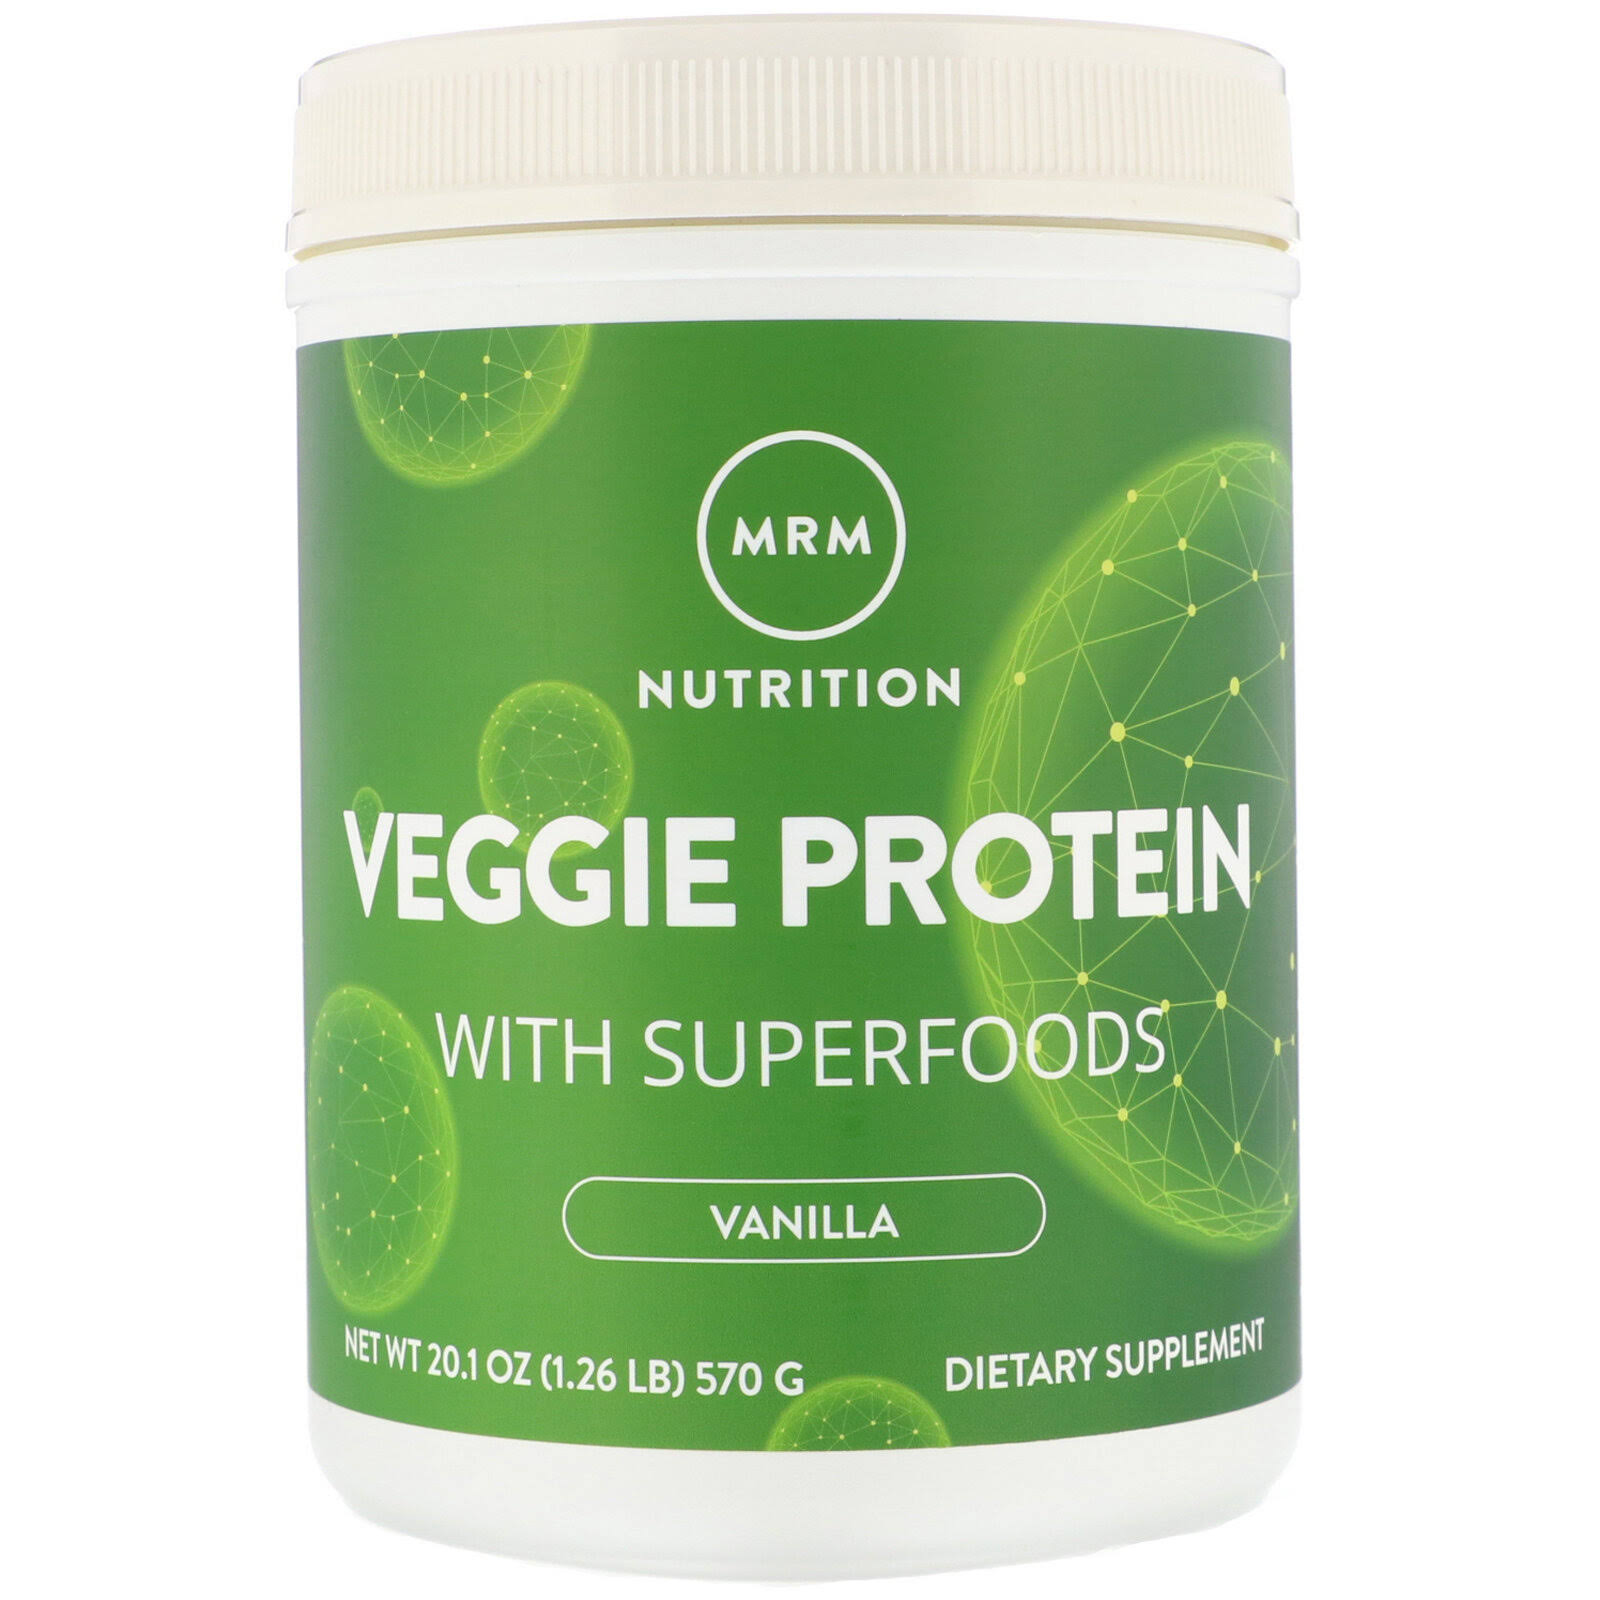 MRM Veggie Protein Nutritional Supplement - Vanilla, 570g